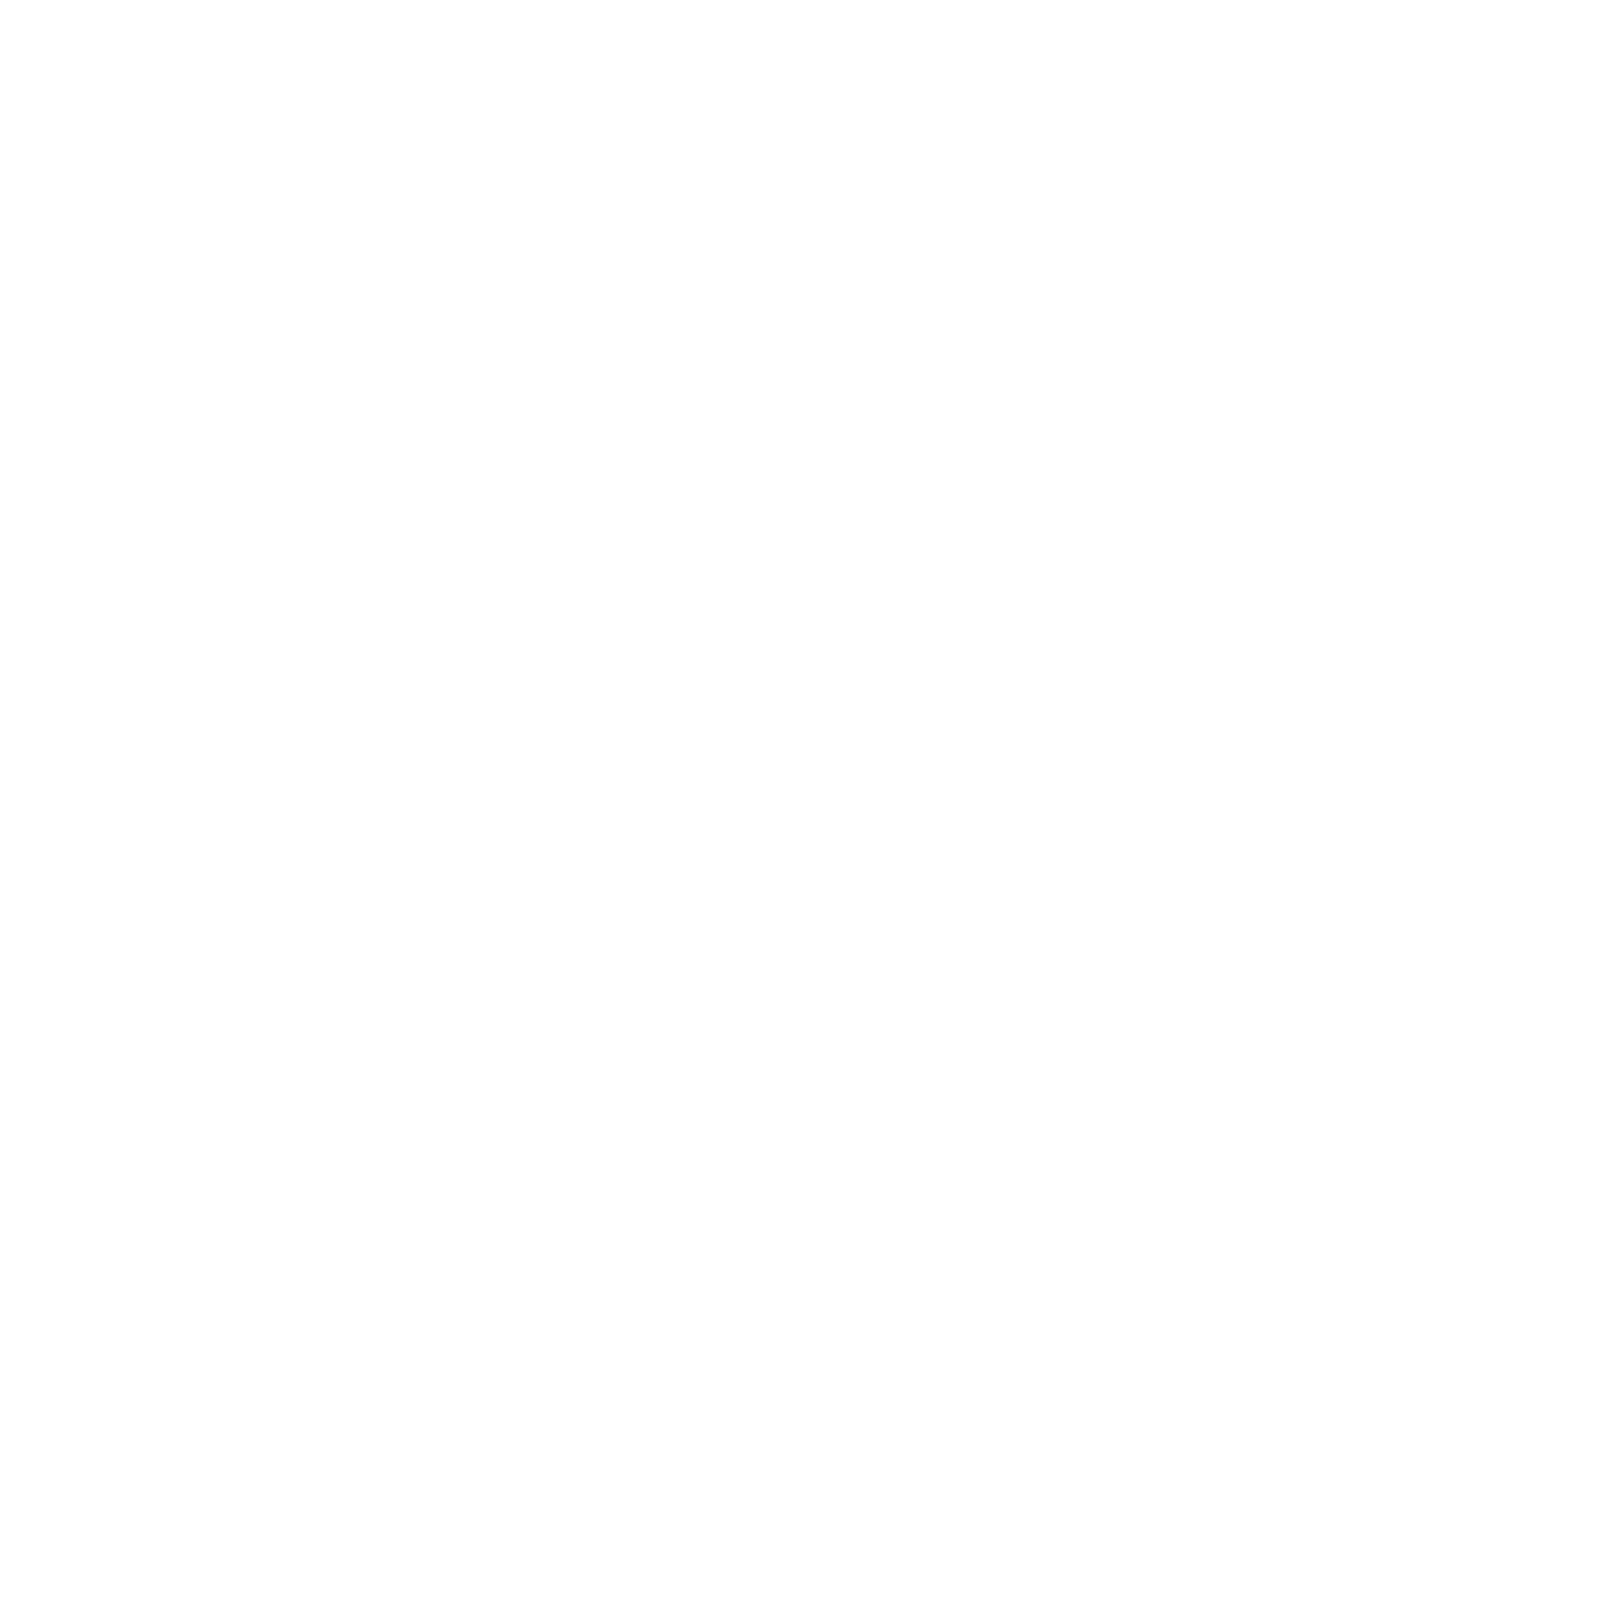 Devault Foods